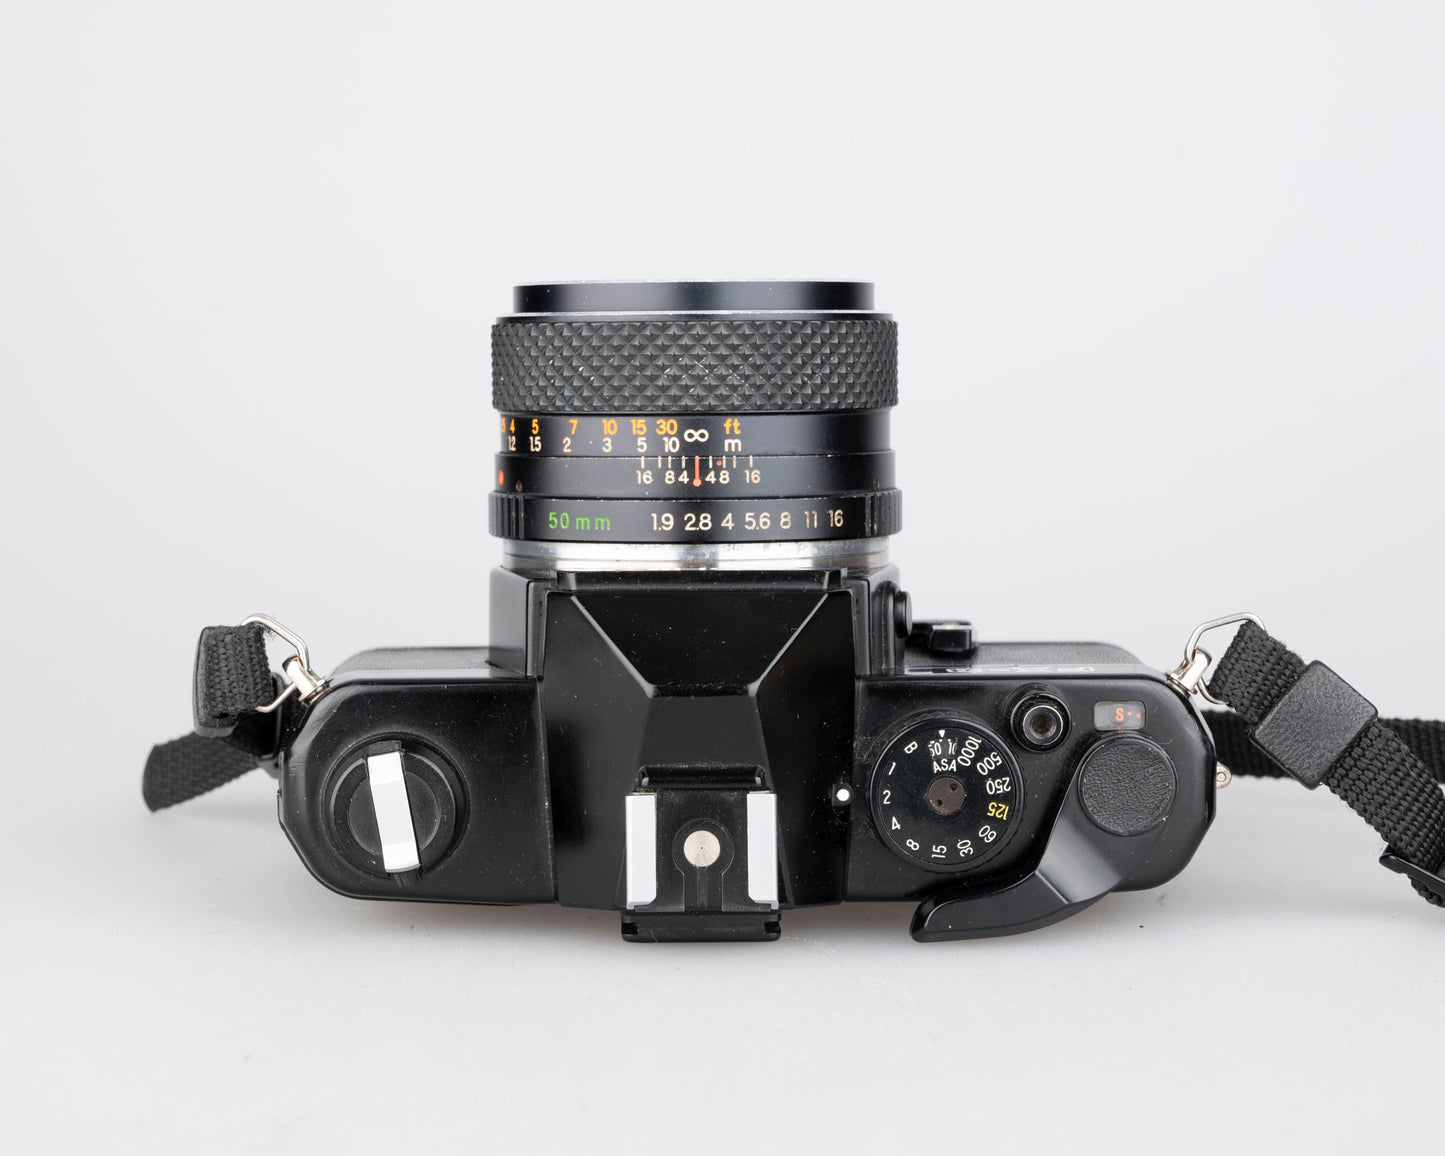 Yashica FX-3 35mm SLR w/ 50mm f1.9 lens (serial 287813)